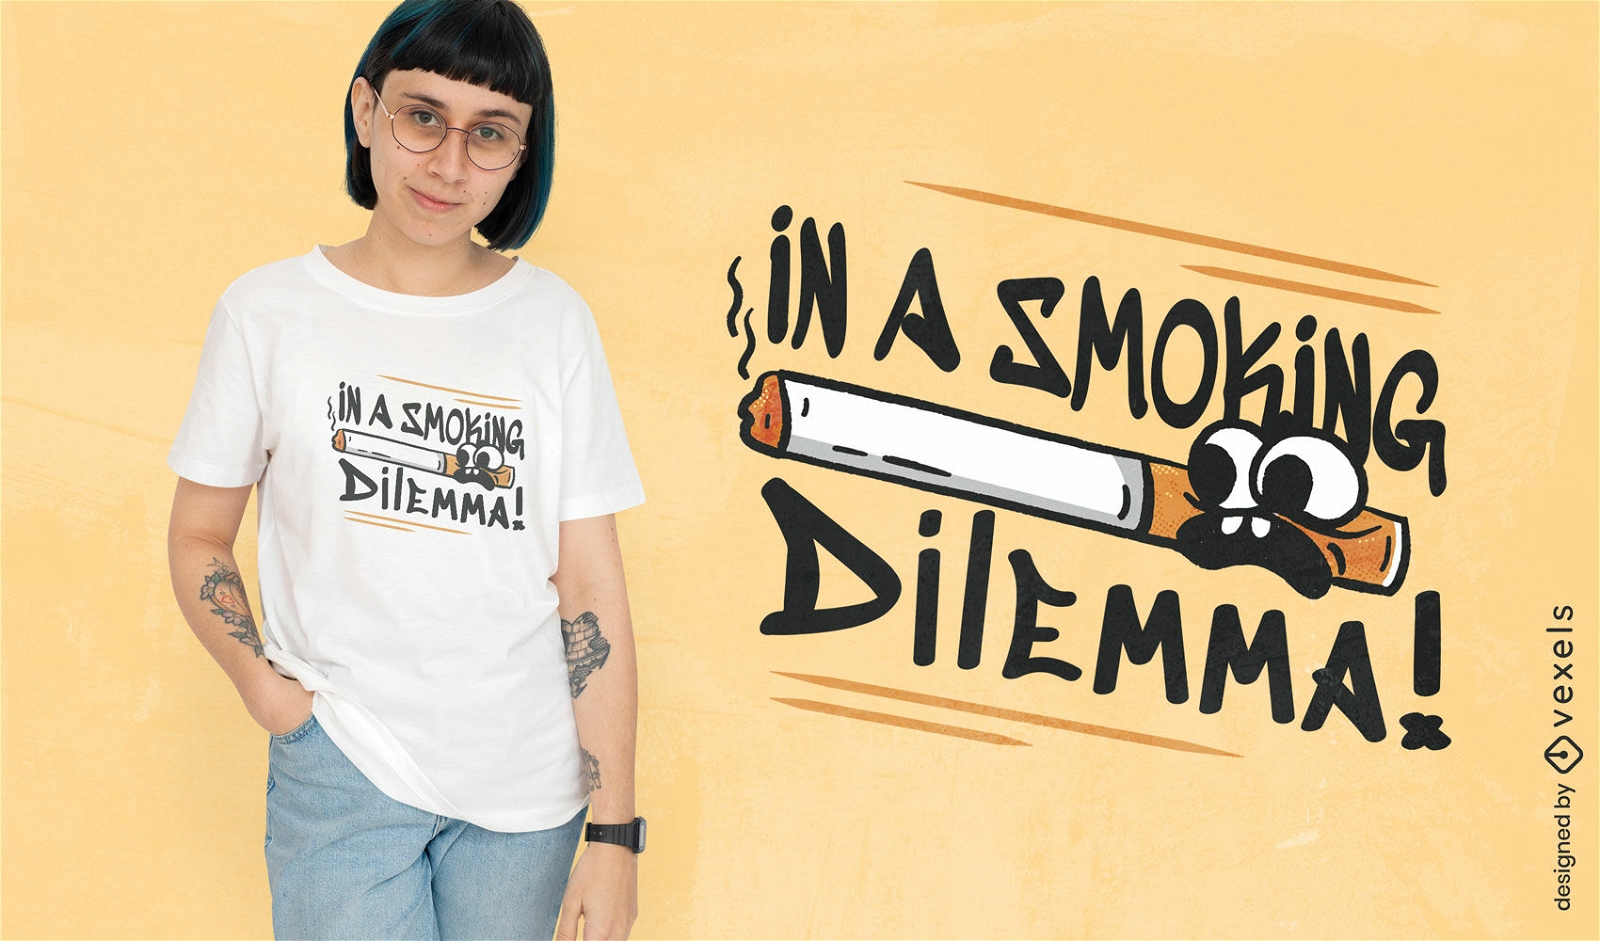 Dise?o de camiseta de dilema de fumar.